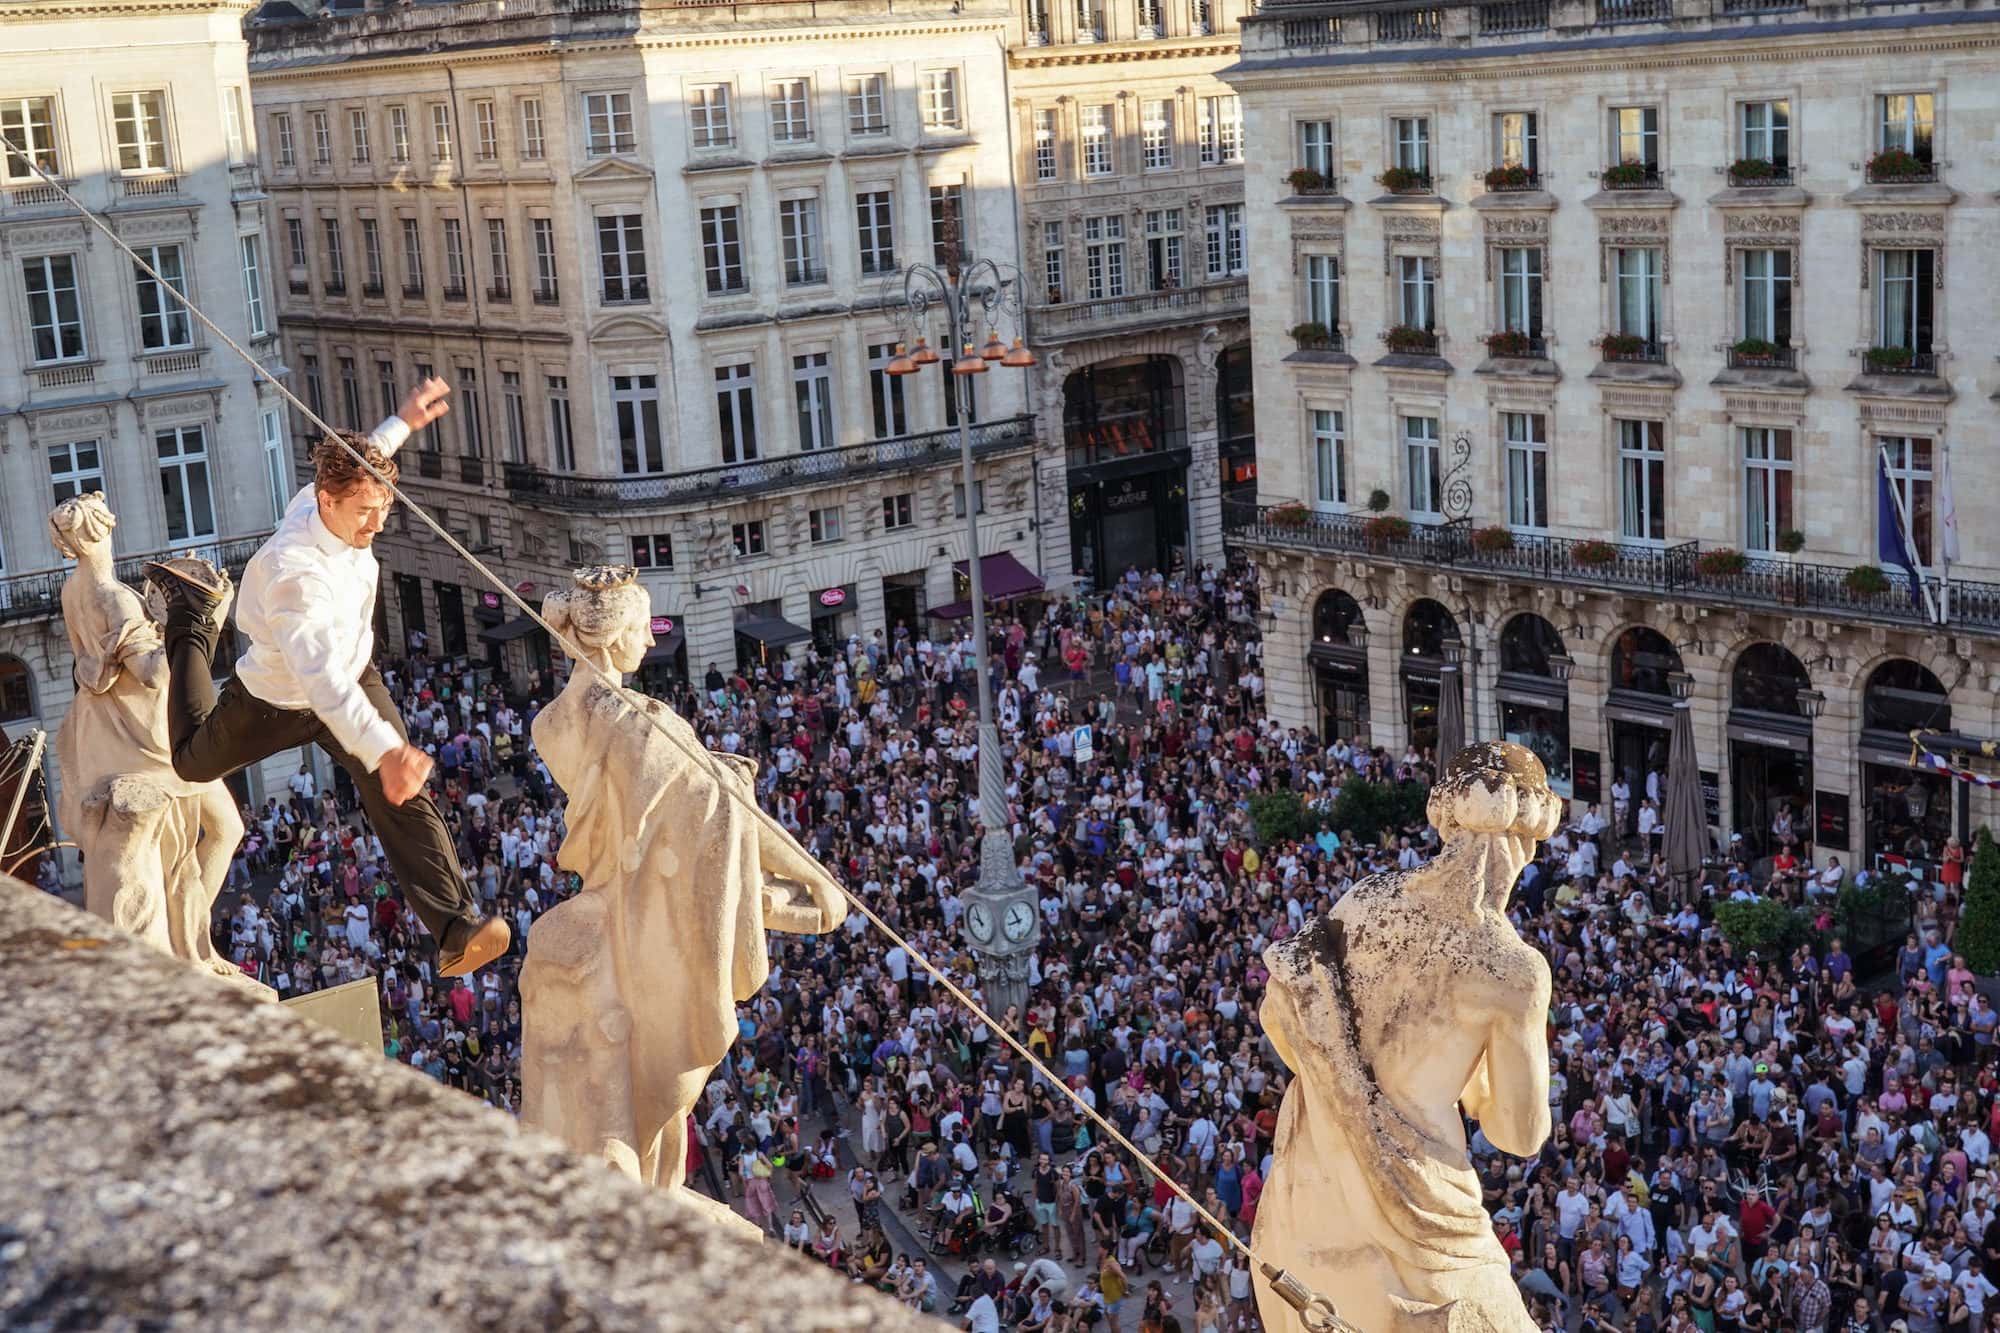 Après Liberté !, la saison culturelle 2021 de Bordeaux s’intitulera Bienvenue !